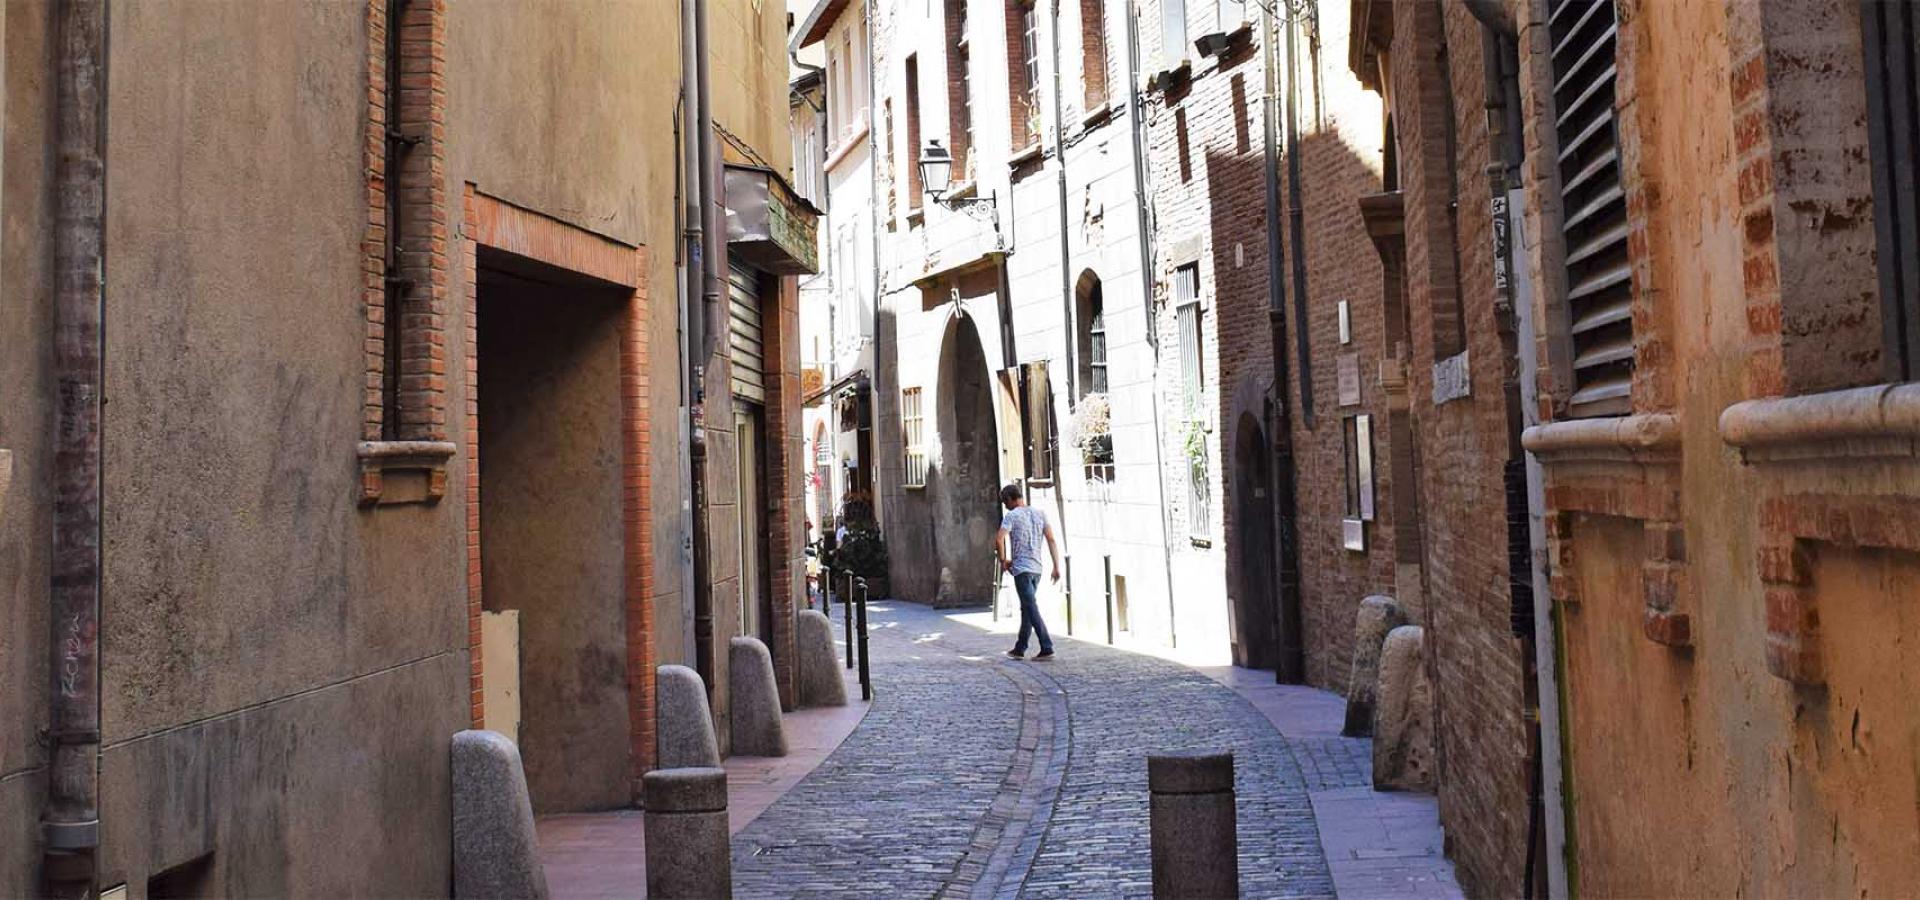 Décor tournage : la rue du May, rue typique du Toulouse historique